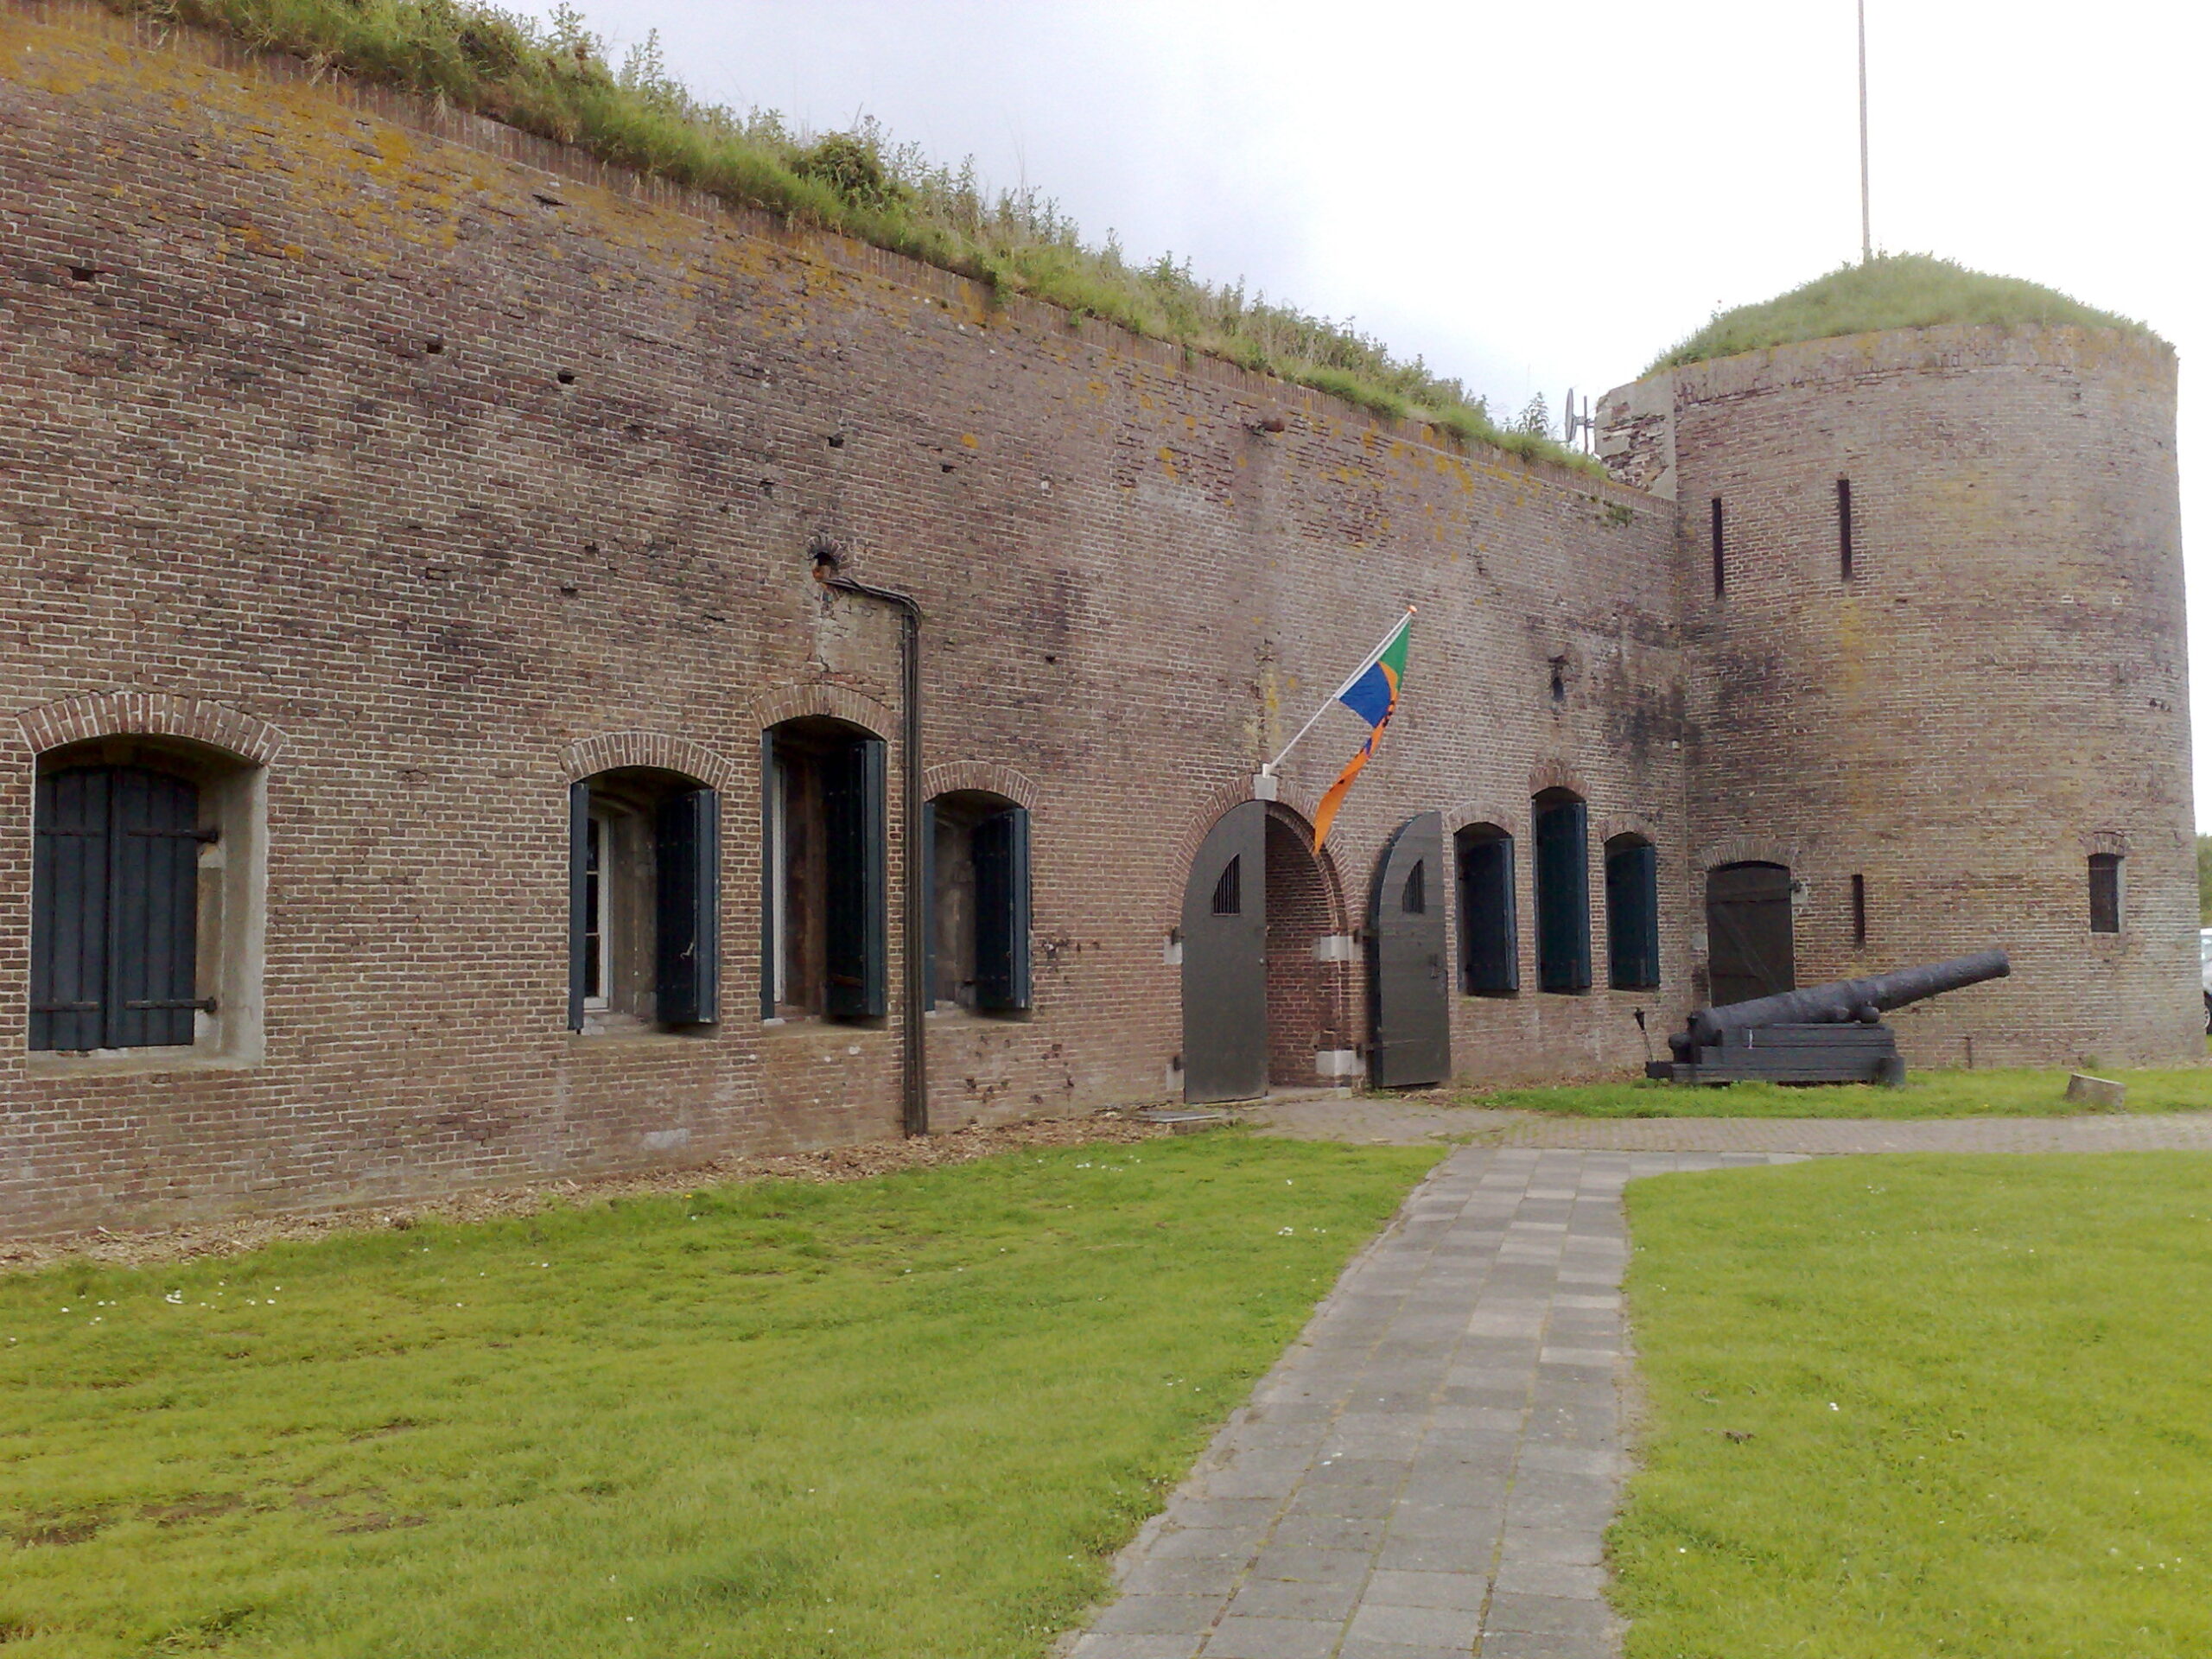 Bezoek Fort Buitensluis | Fort Buitensluis